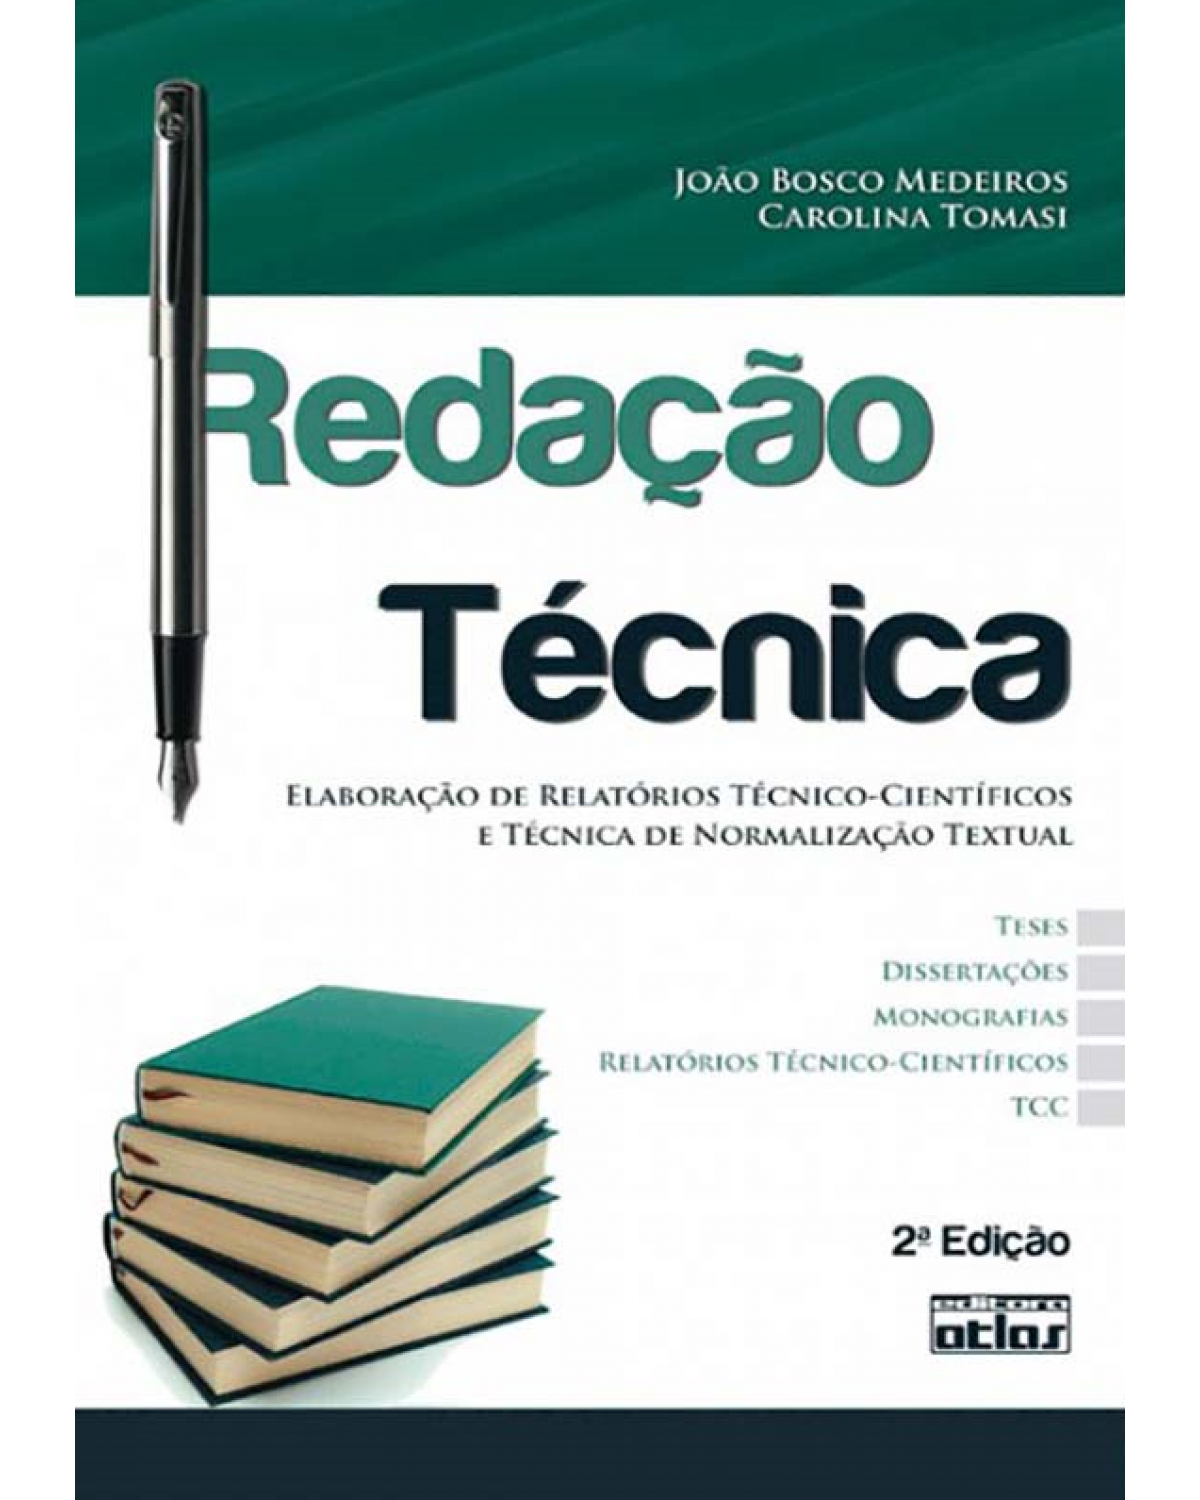 Redação técnica - Elaboração de relatórios técnico-científicos e técnica de normalização textual - 2ª Edição | 2010